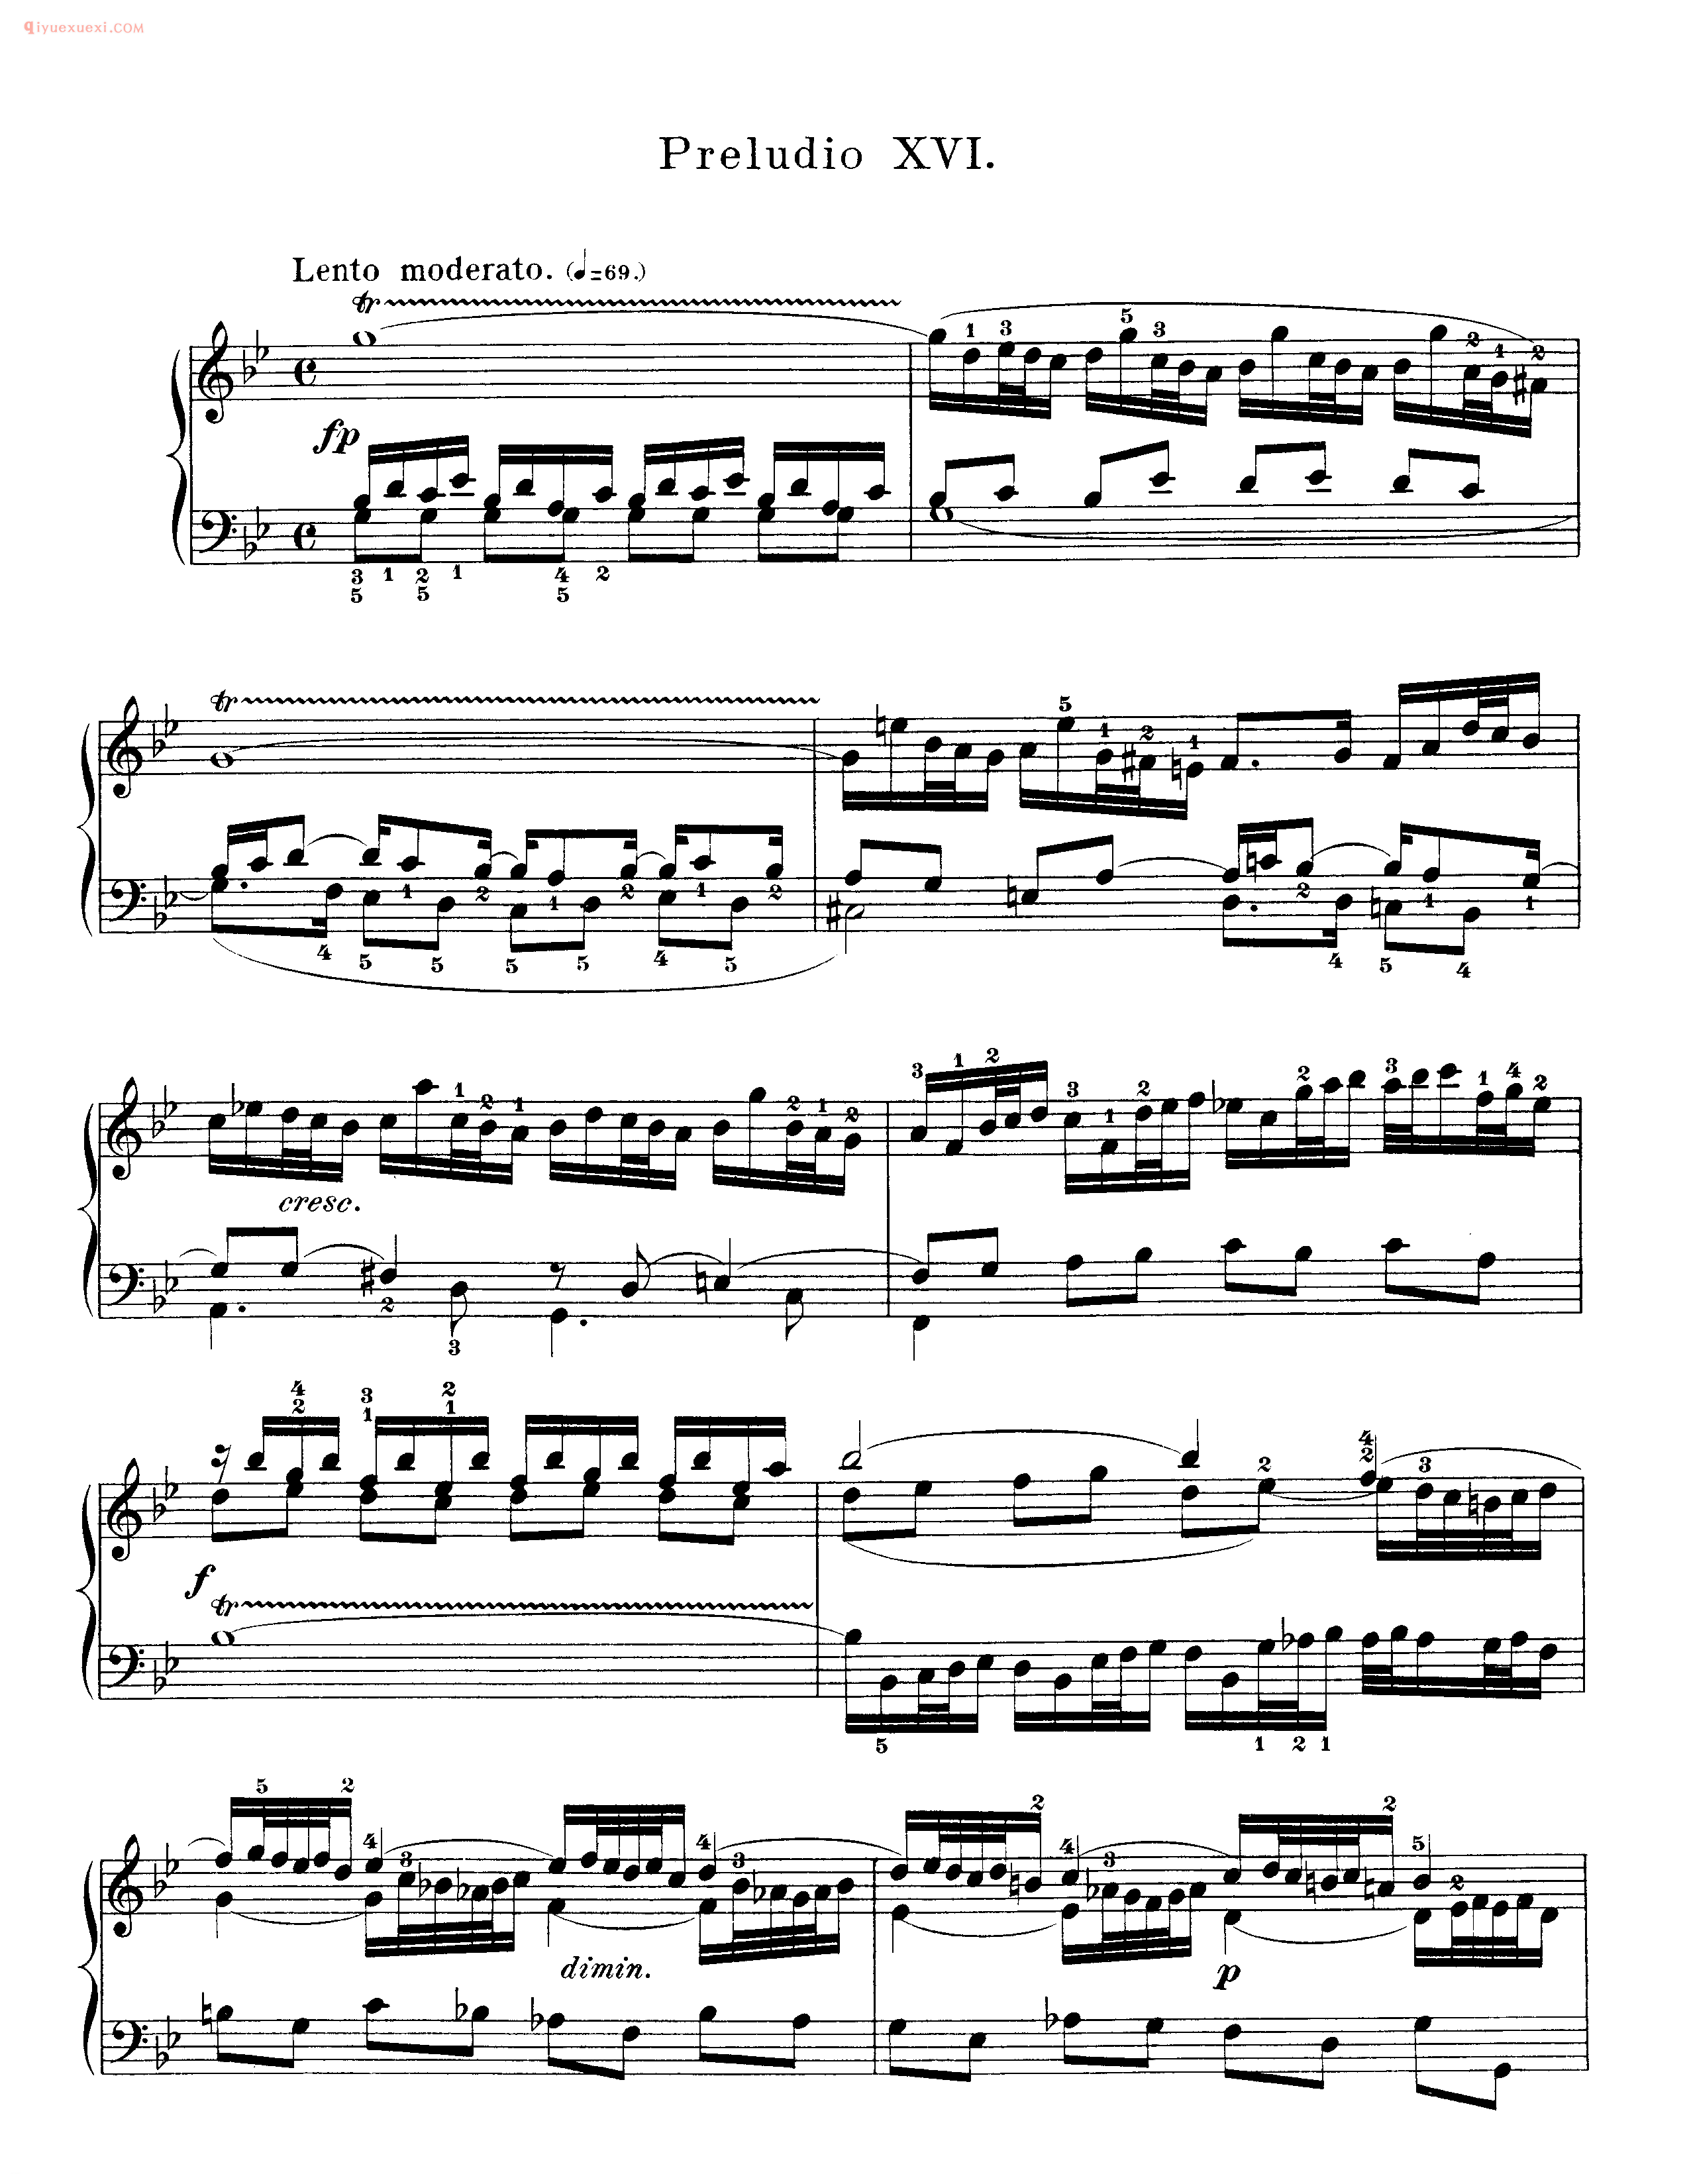 巴赫平均律第一册_第十六首_前奏曲《Preludio XVI》